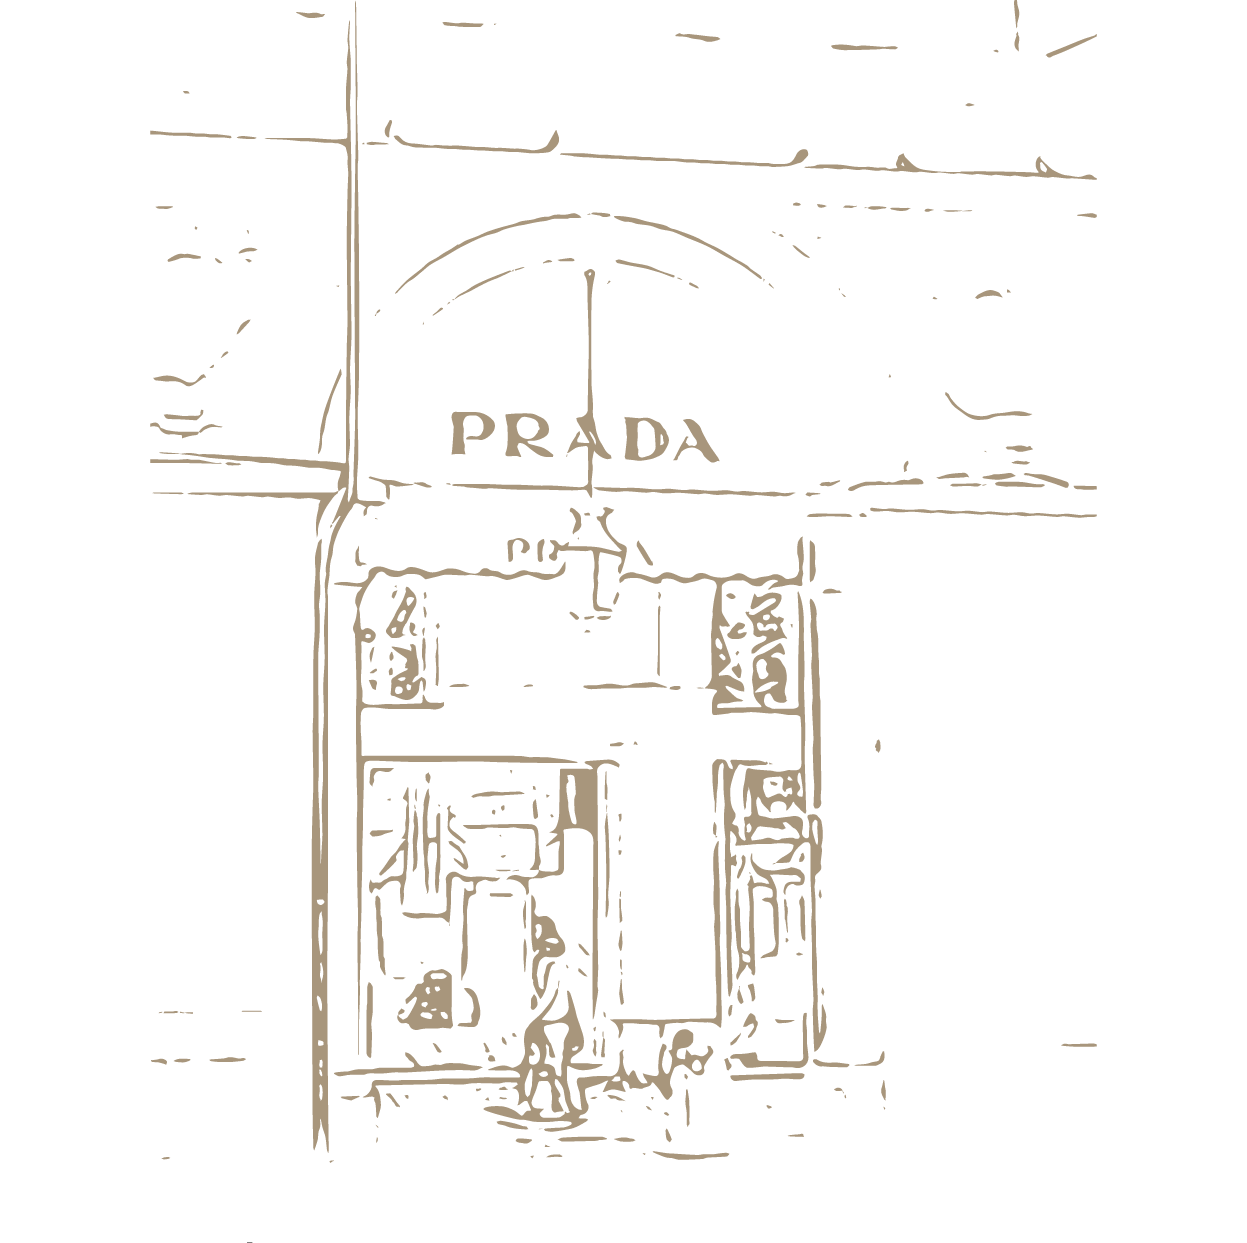 prada shop